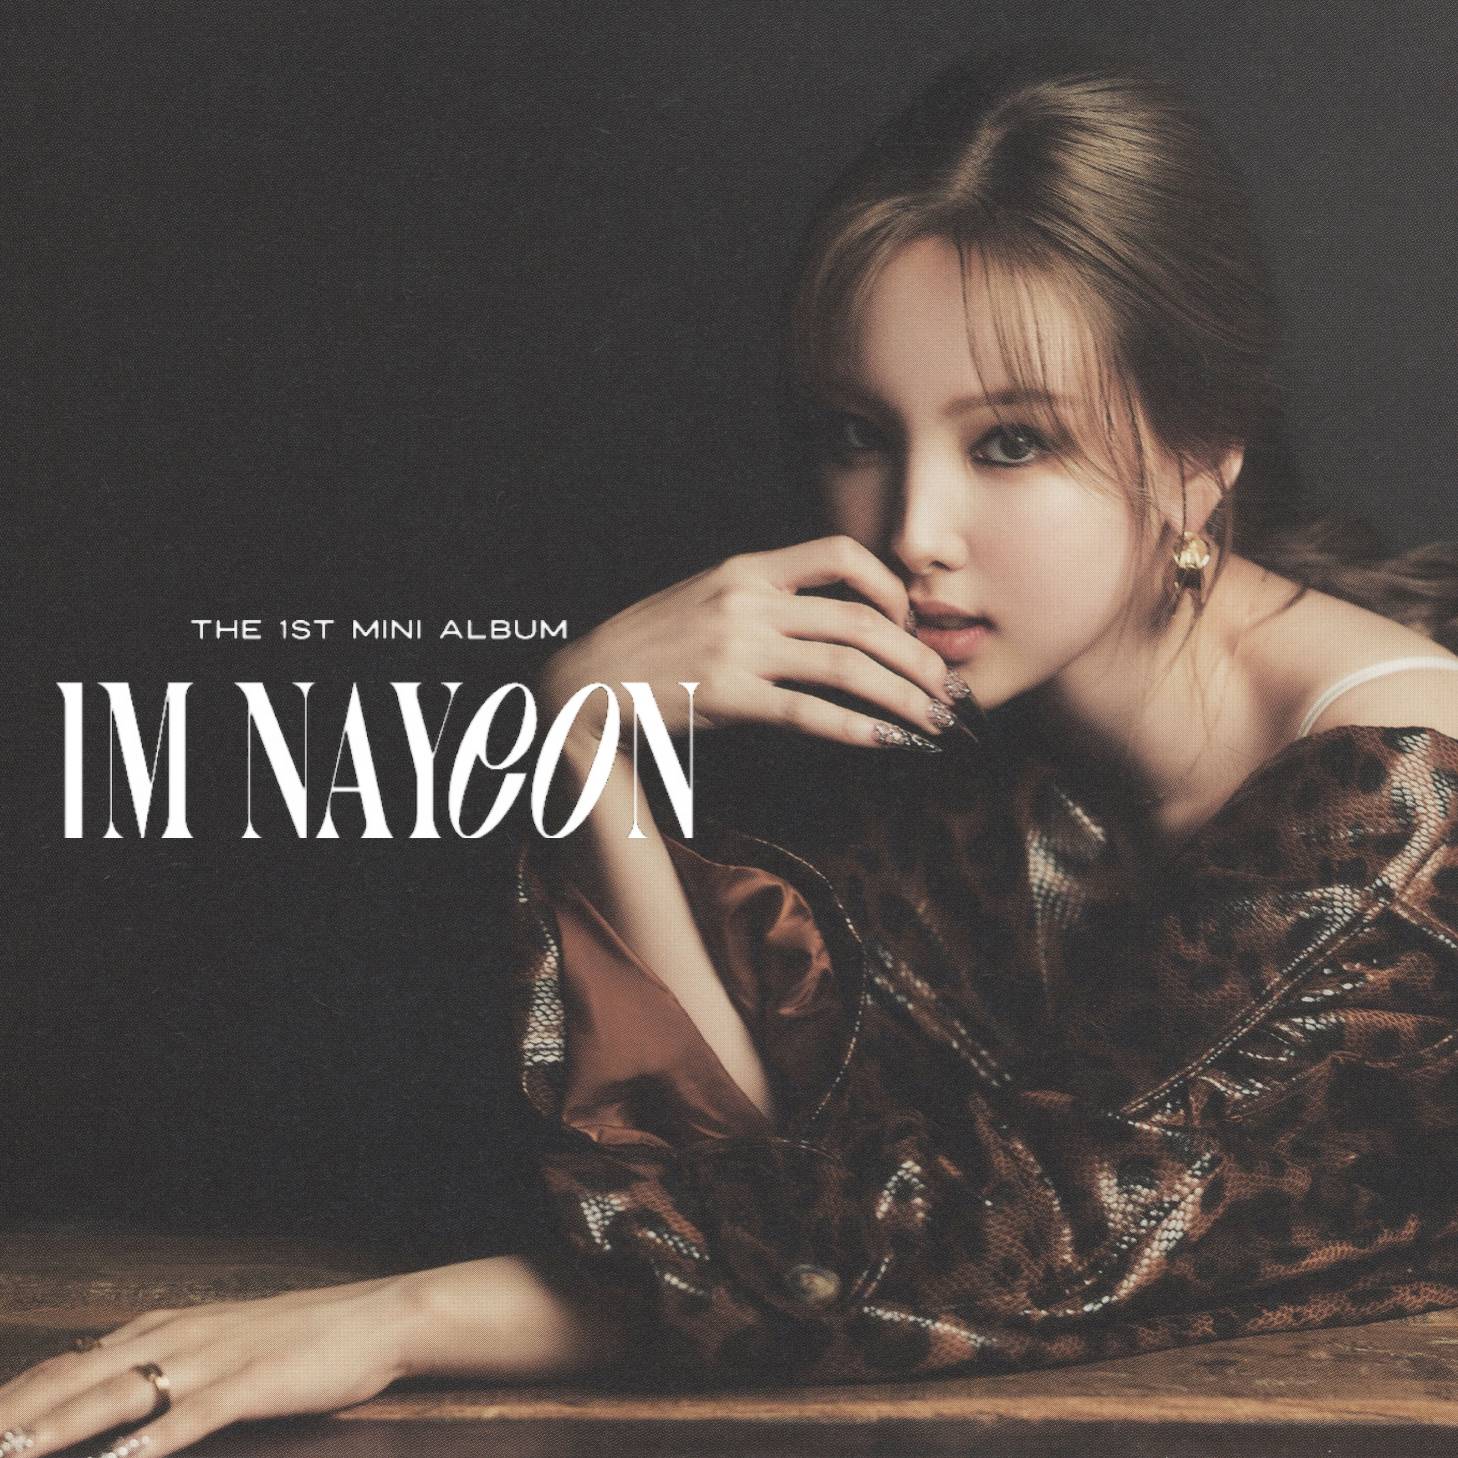 NAYEON - IM NAYEON (ALBUM COVER) by Kyliemaine on DeviantArt